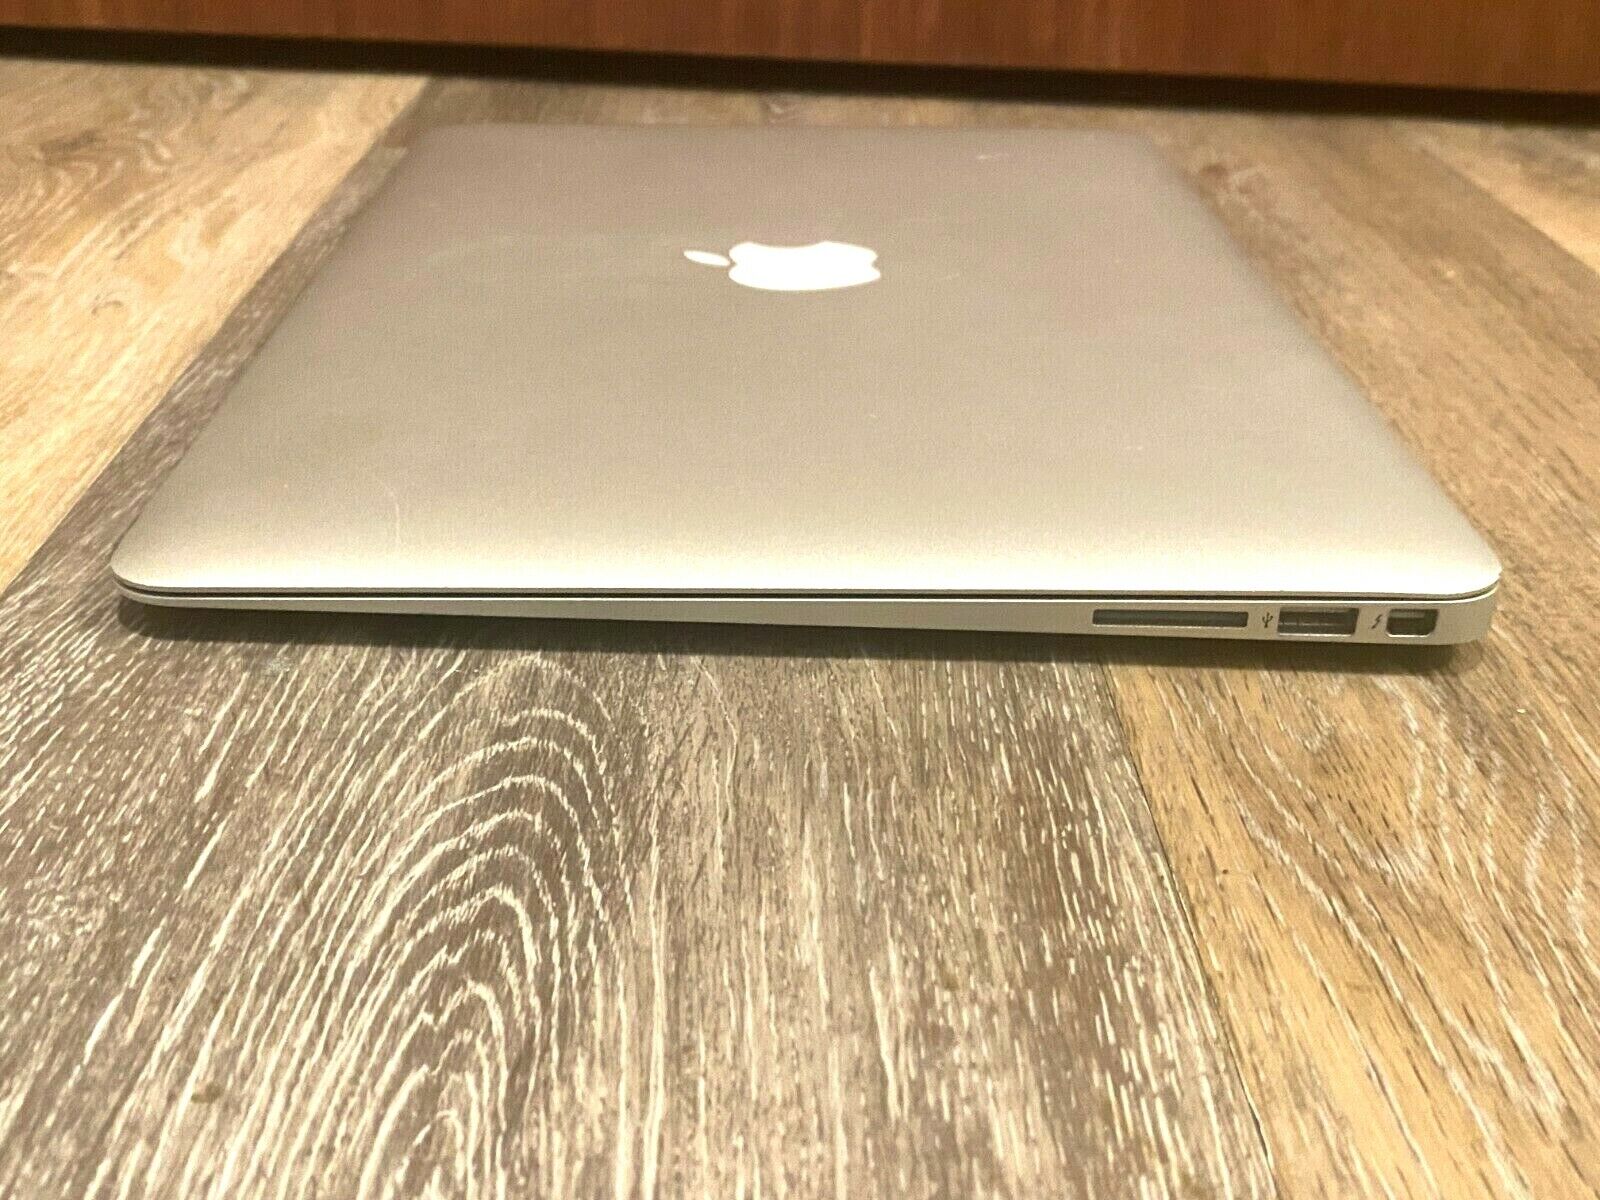 13" Apple MacBook Air Big Sur 3.3Ghz i7 TURBO - 512GB SSD 8GB - 3 YEAR WARRANTY Apple Does Not Apply - фотография #6